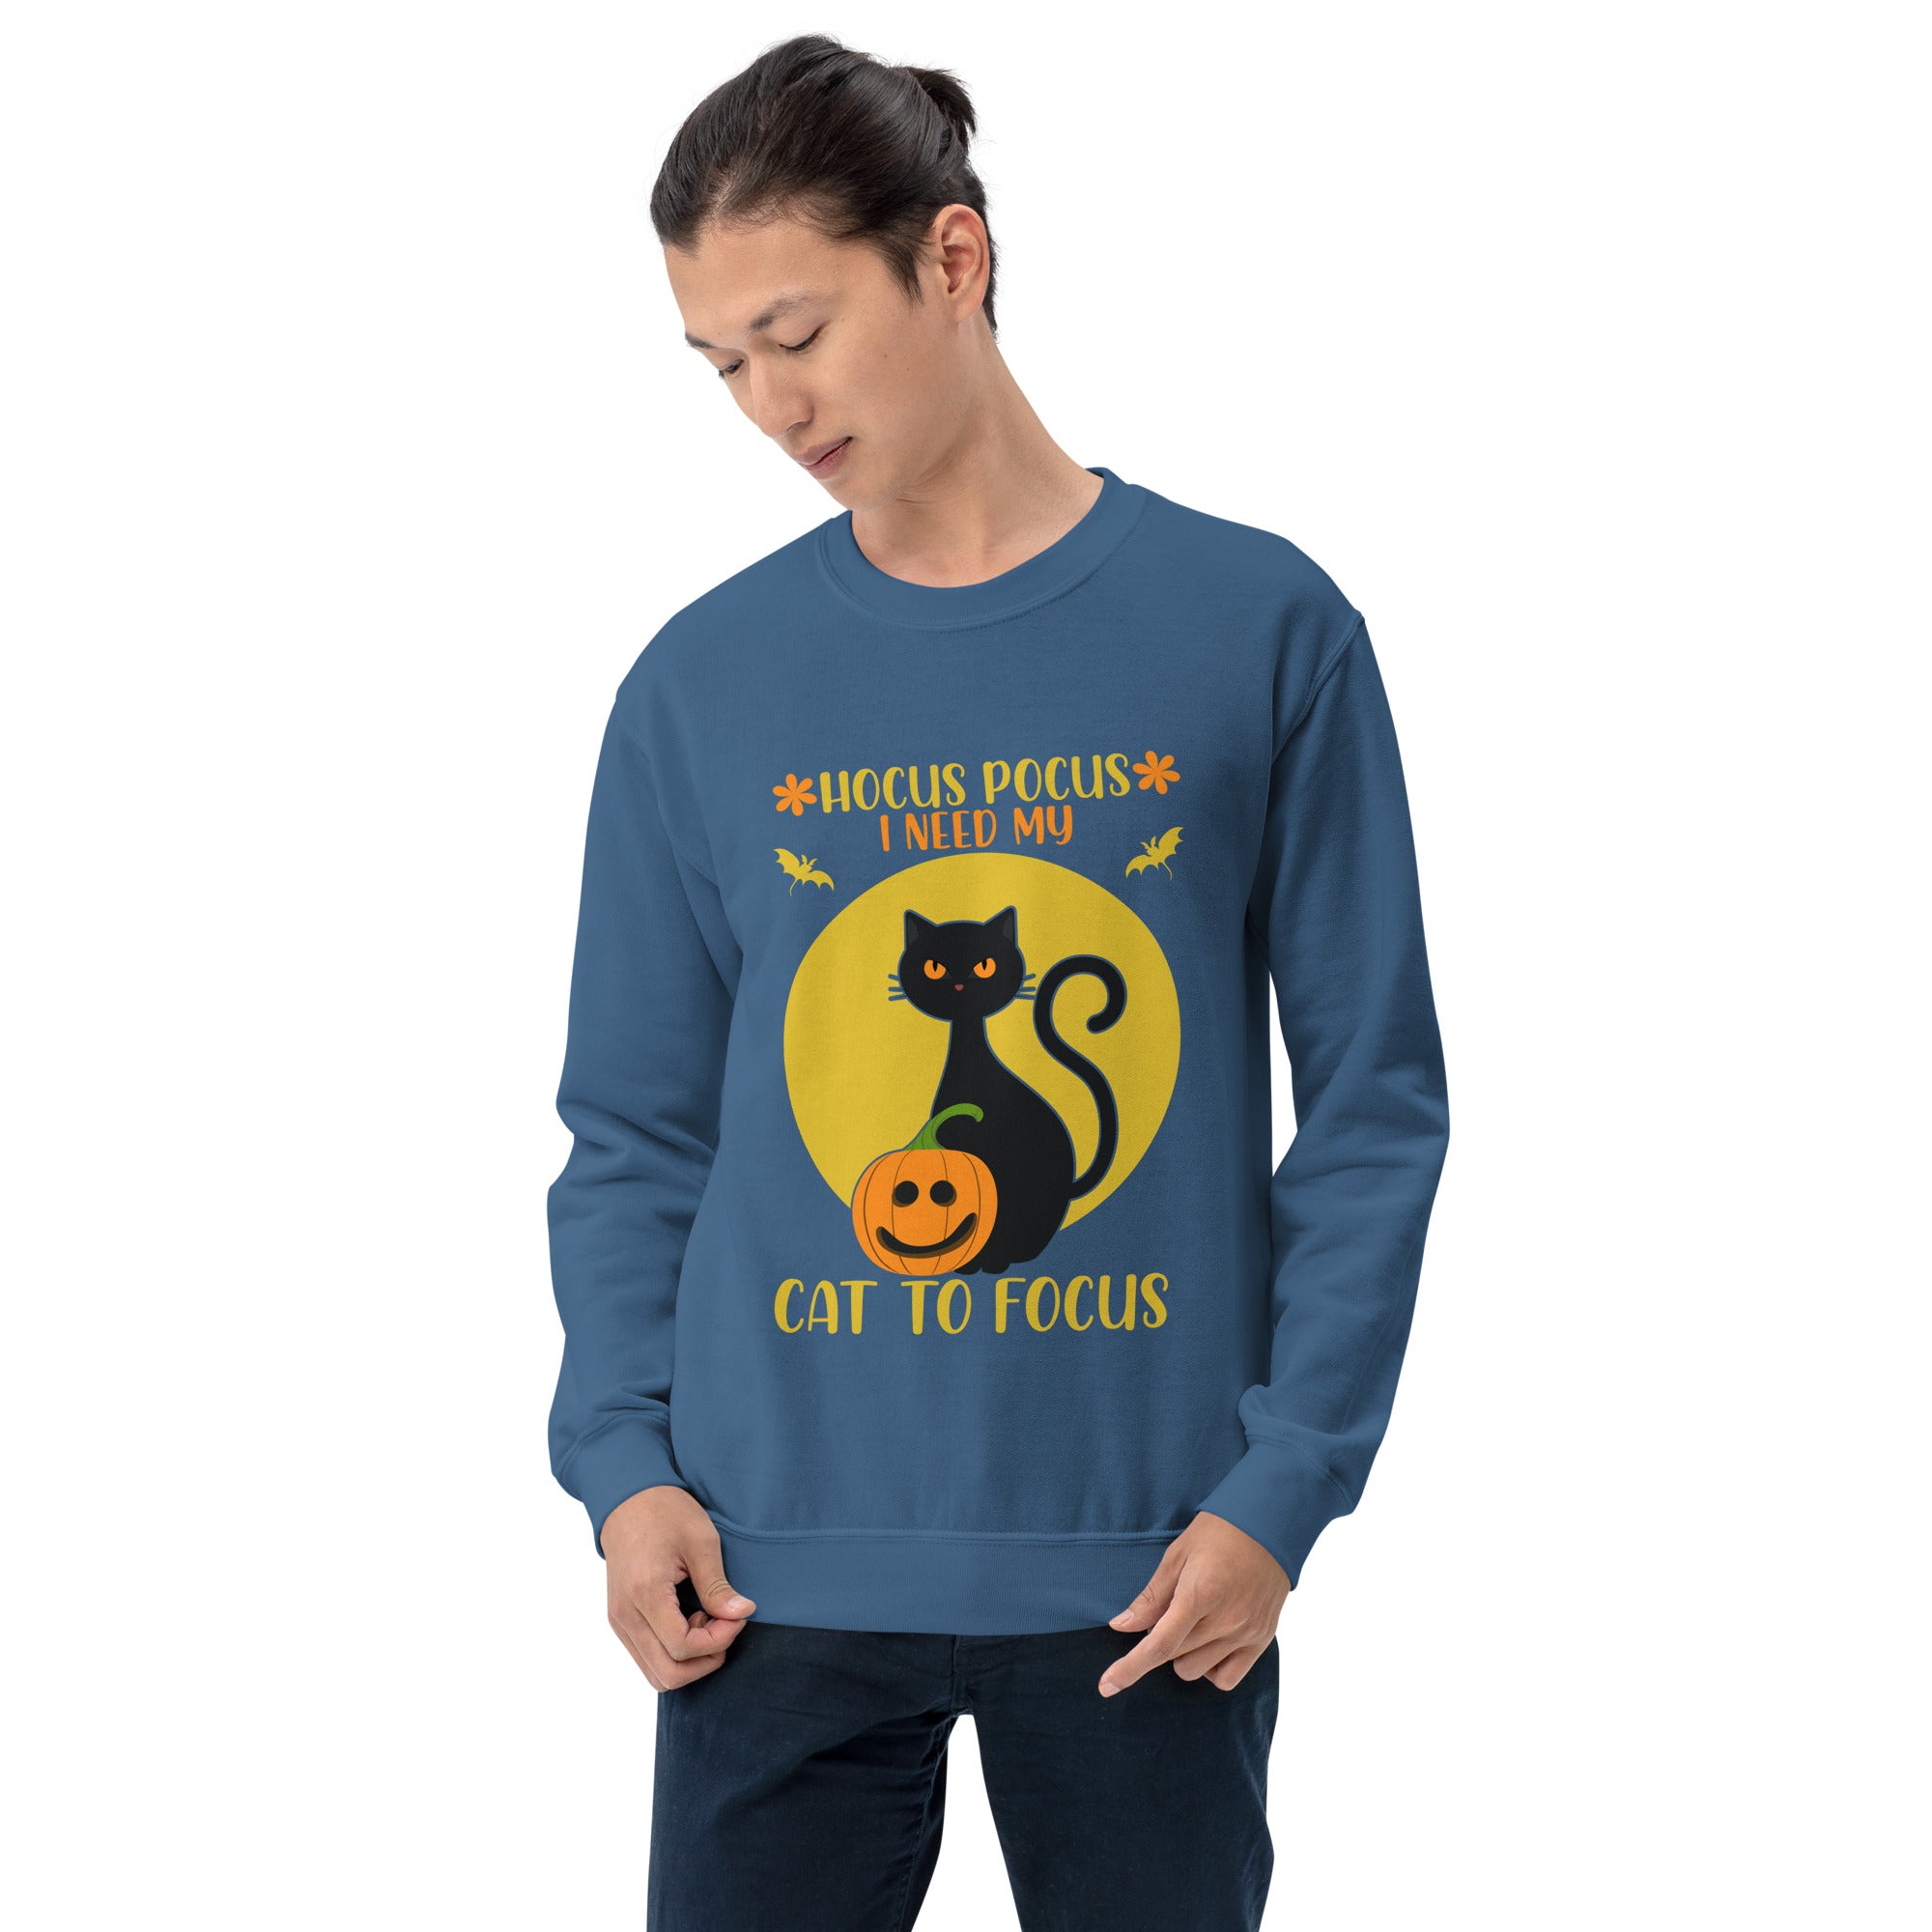 Hocus Pocus I Need My Cat To Focus Funny Halloween Black Cat Scary Spooky Cat Lovers Men's Sweatshirt